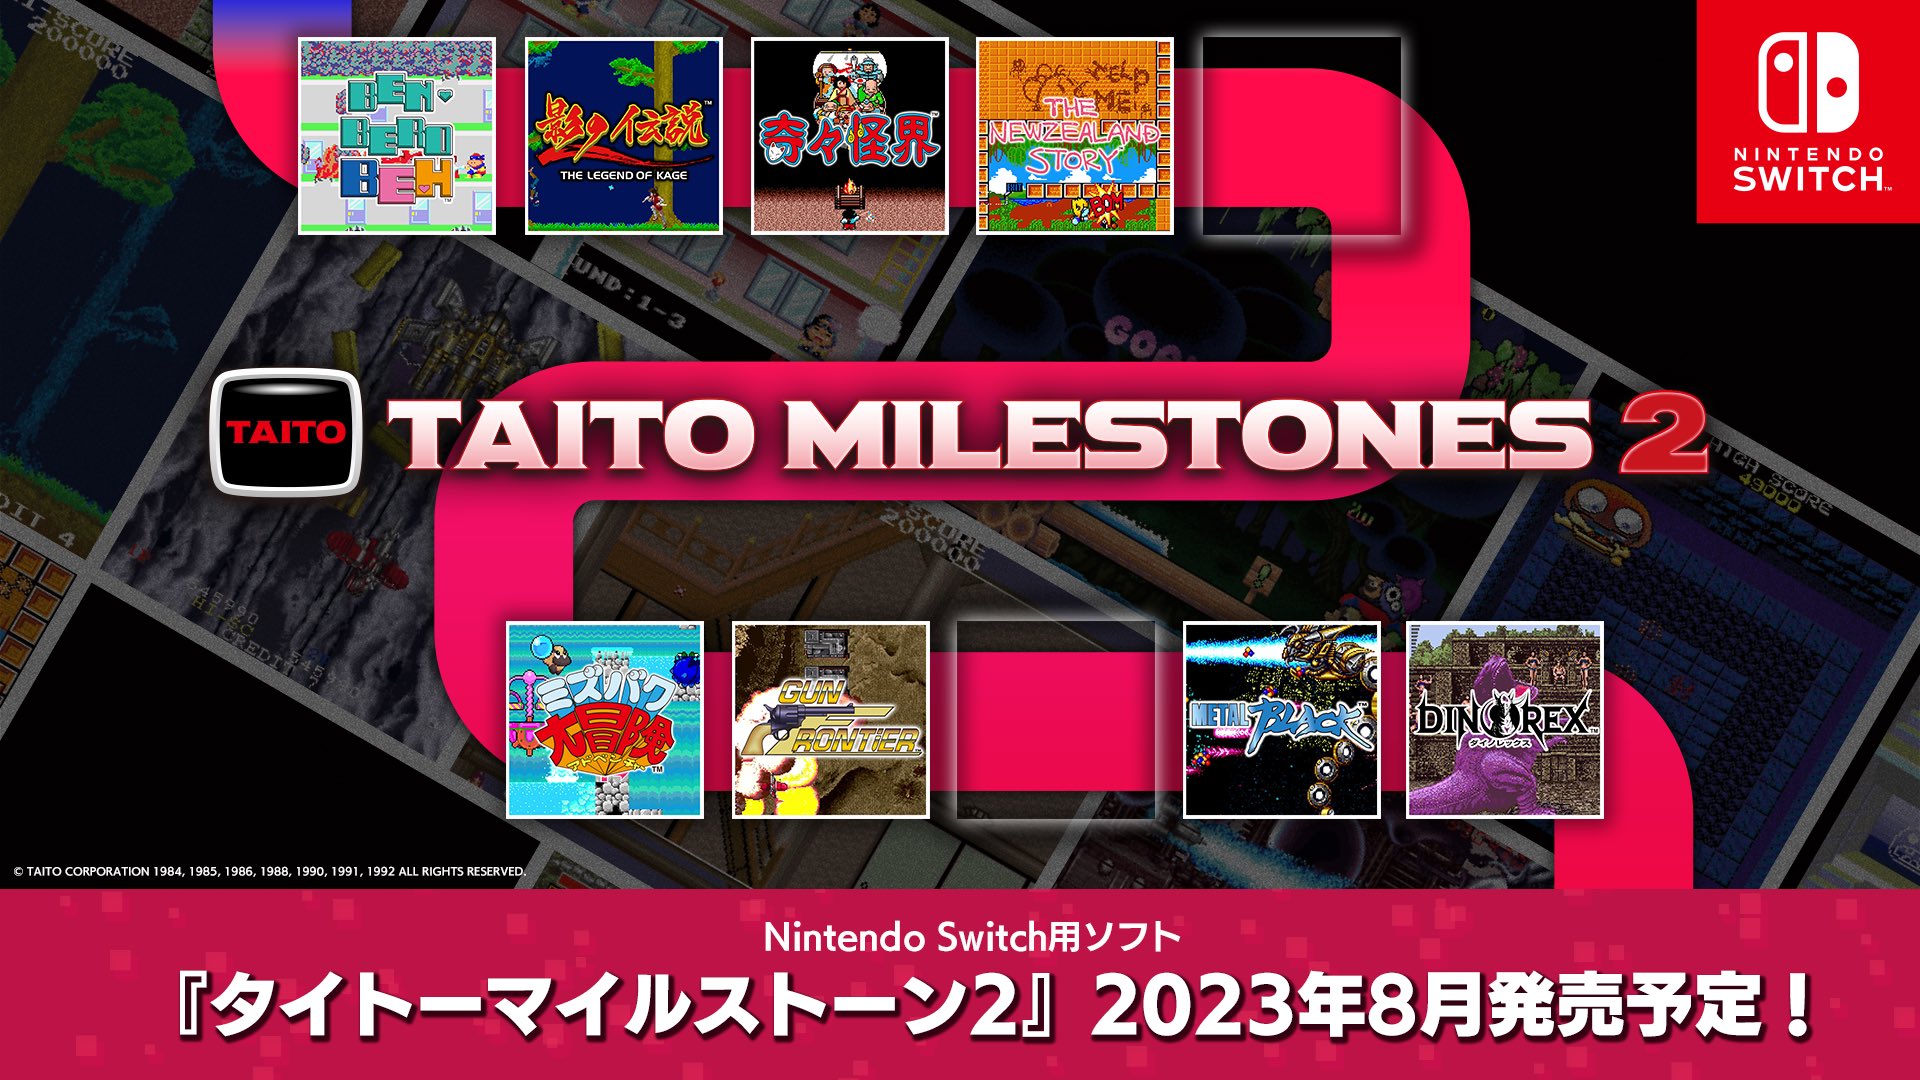 Taito Milestones 2 announced, includes Dino Rex and more